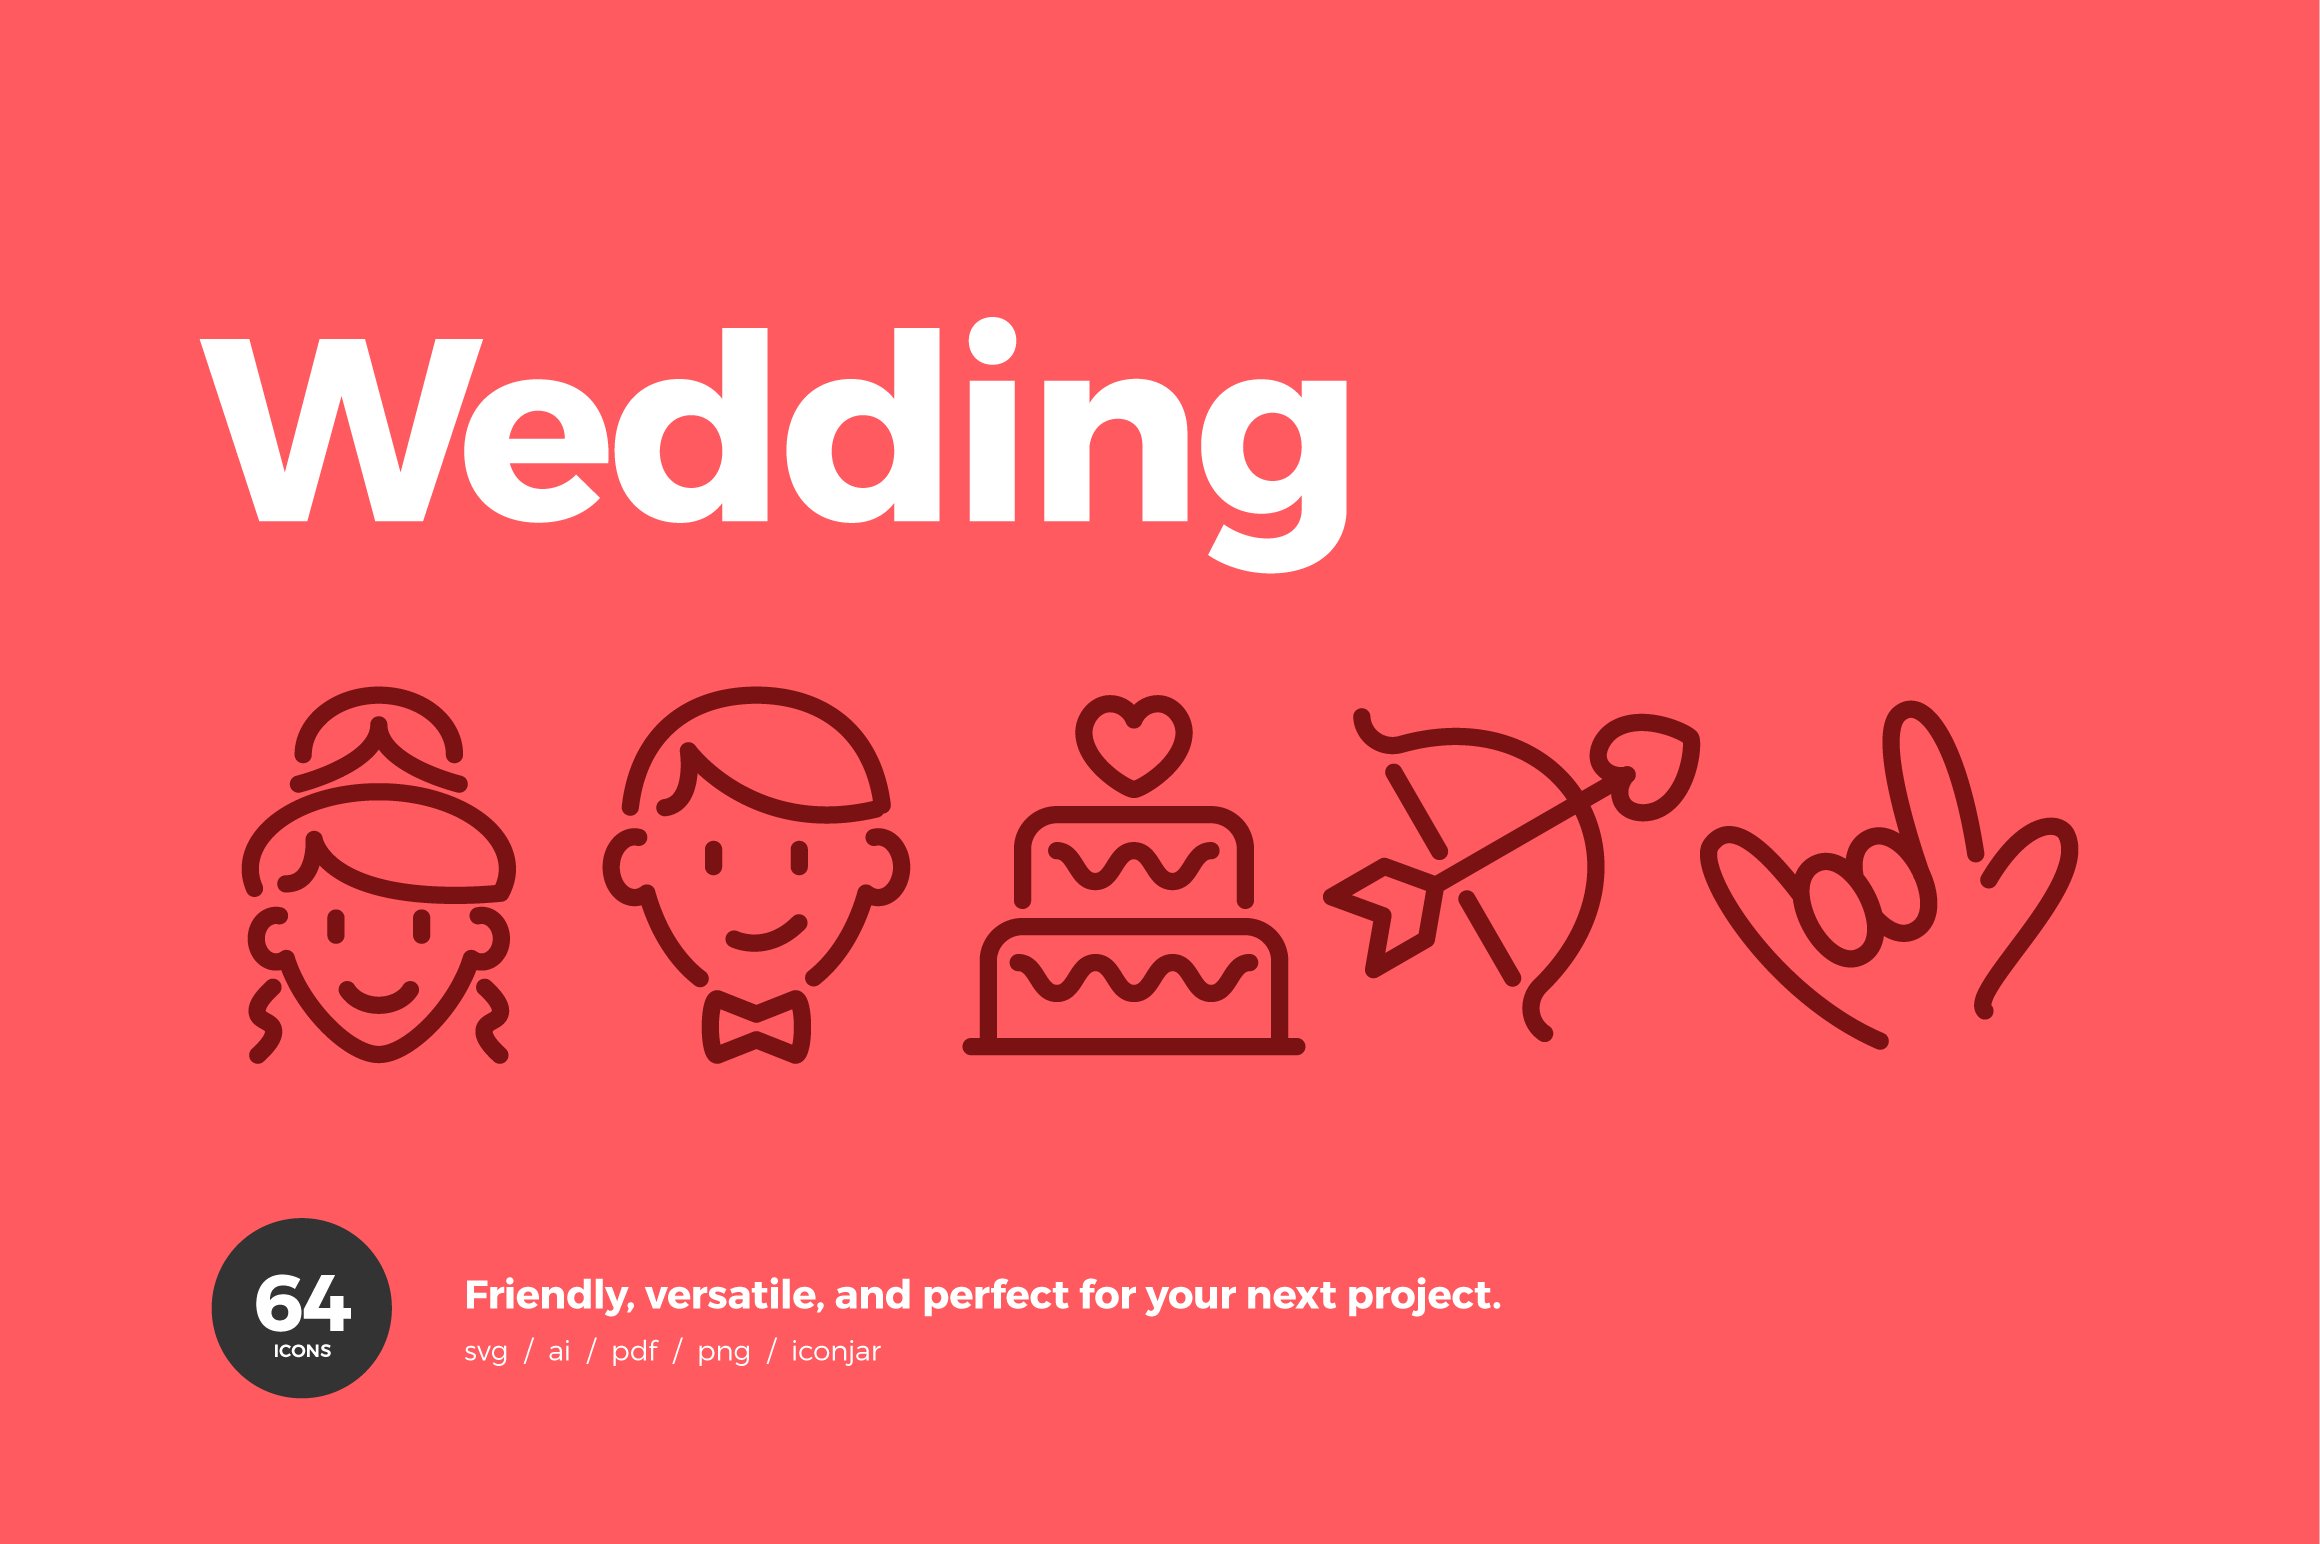 Wedding & Love Icons — Pixi Line cover image.